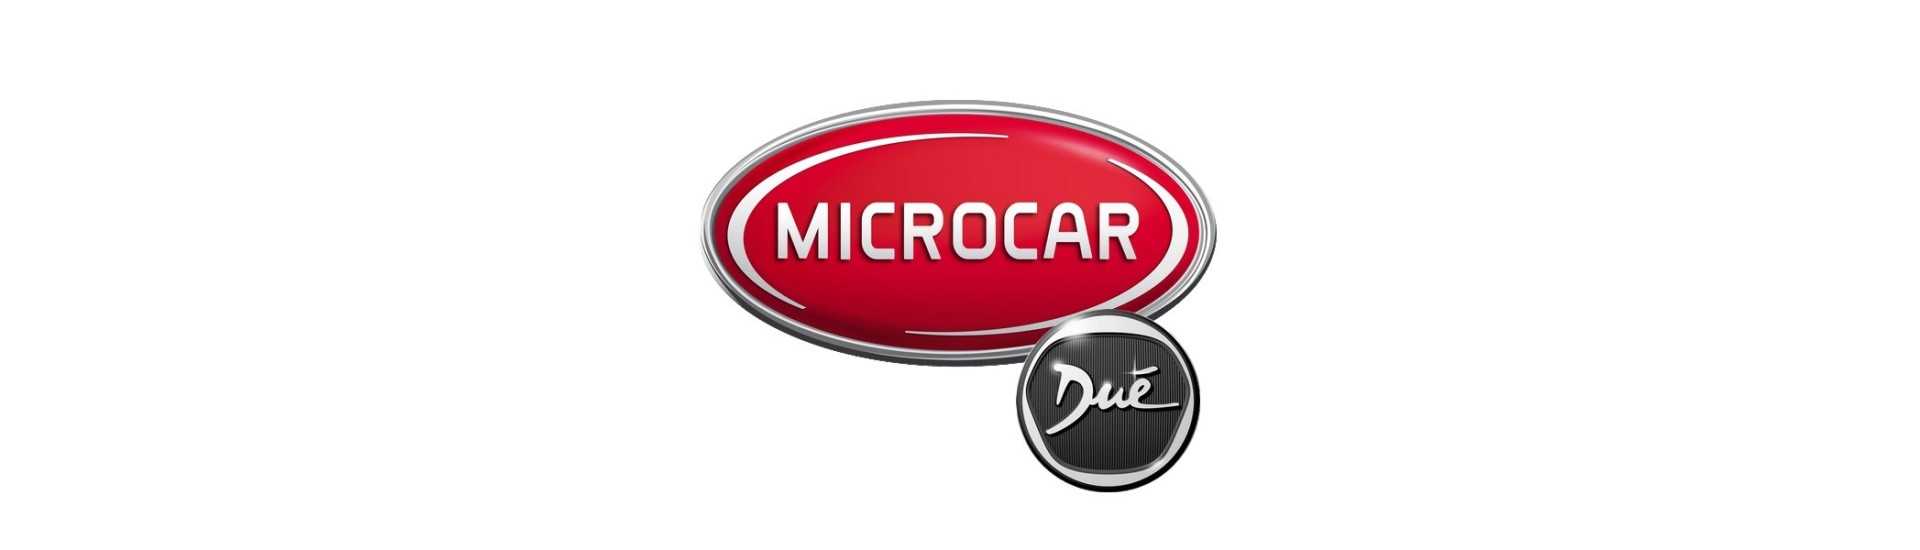 Tank cap al mejor precio coche sin permiso Microcar Dué